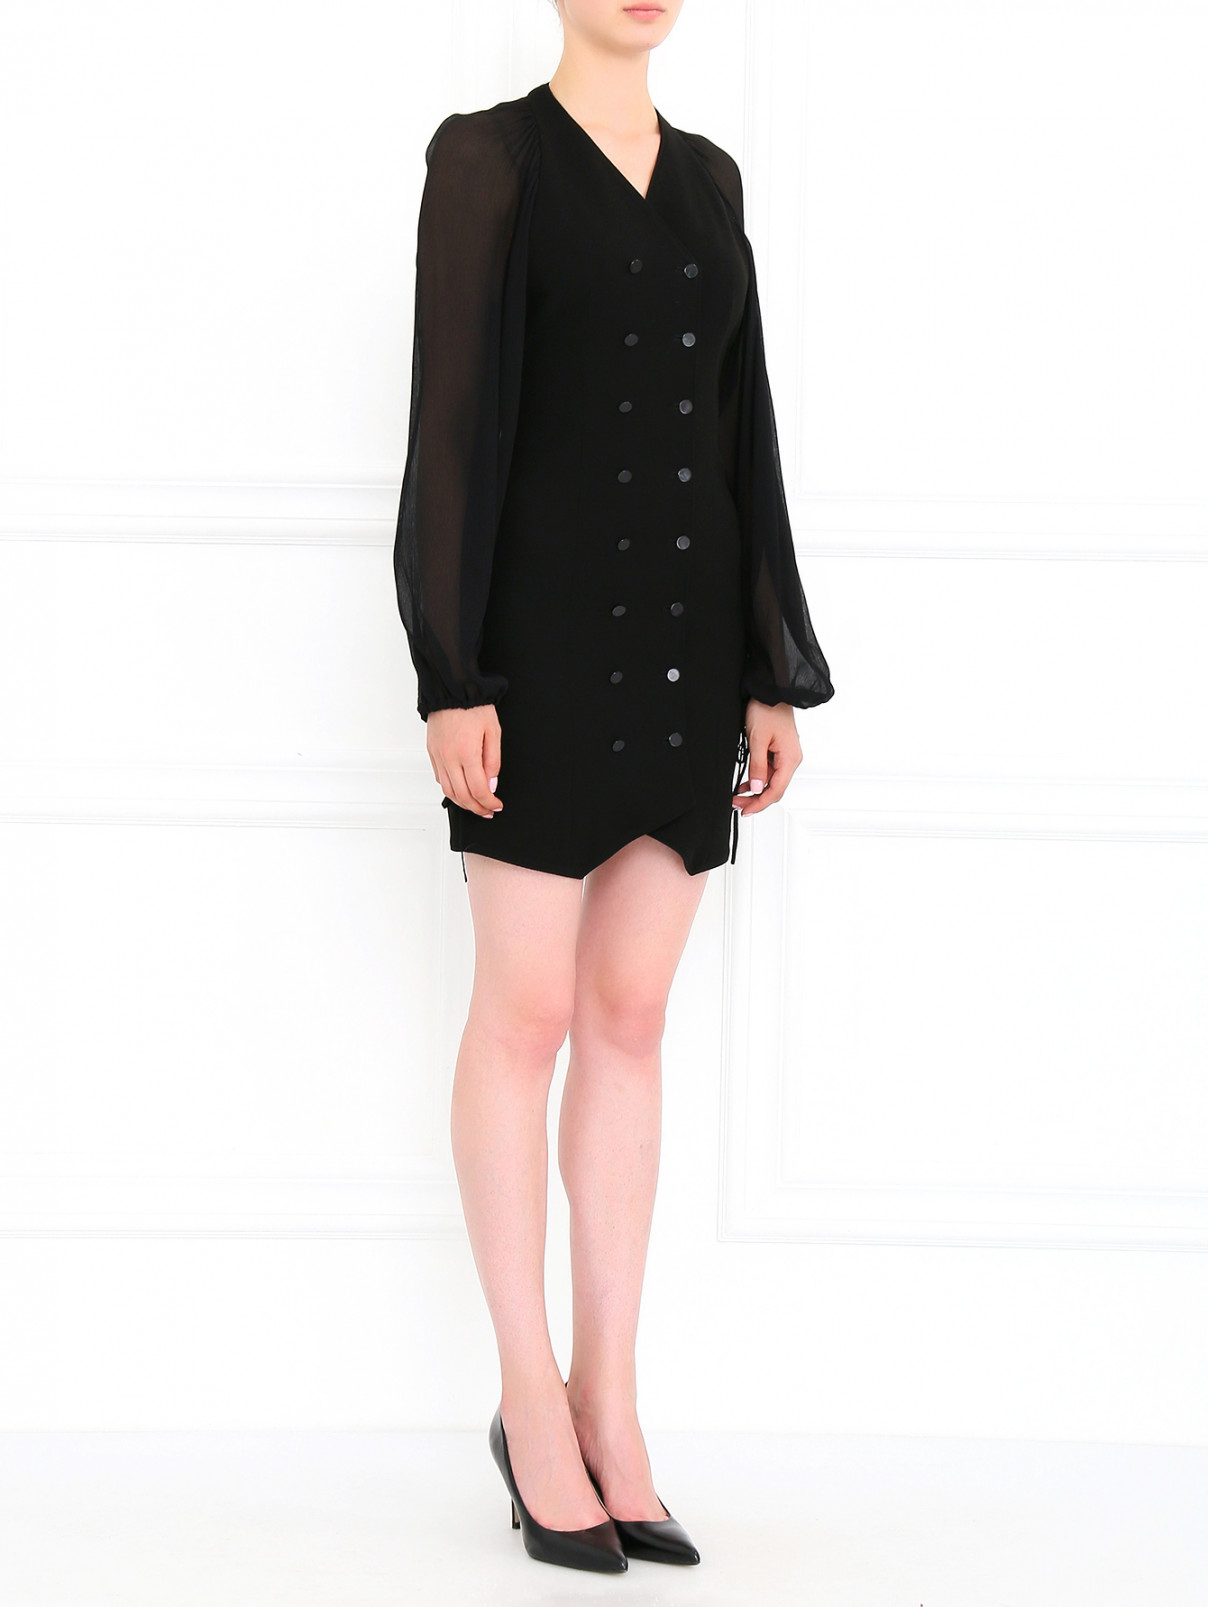 Платье-мини на пуговицах Jean Paul Gaultier  –  Модель Общий вид  – Цвет:  Черный